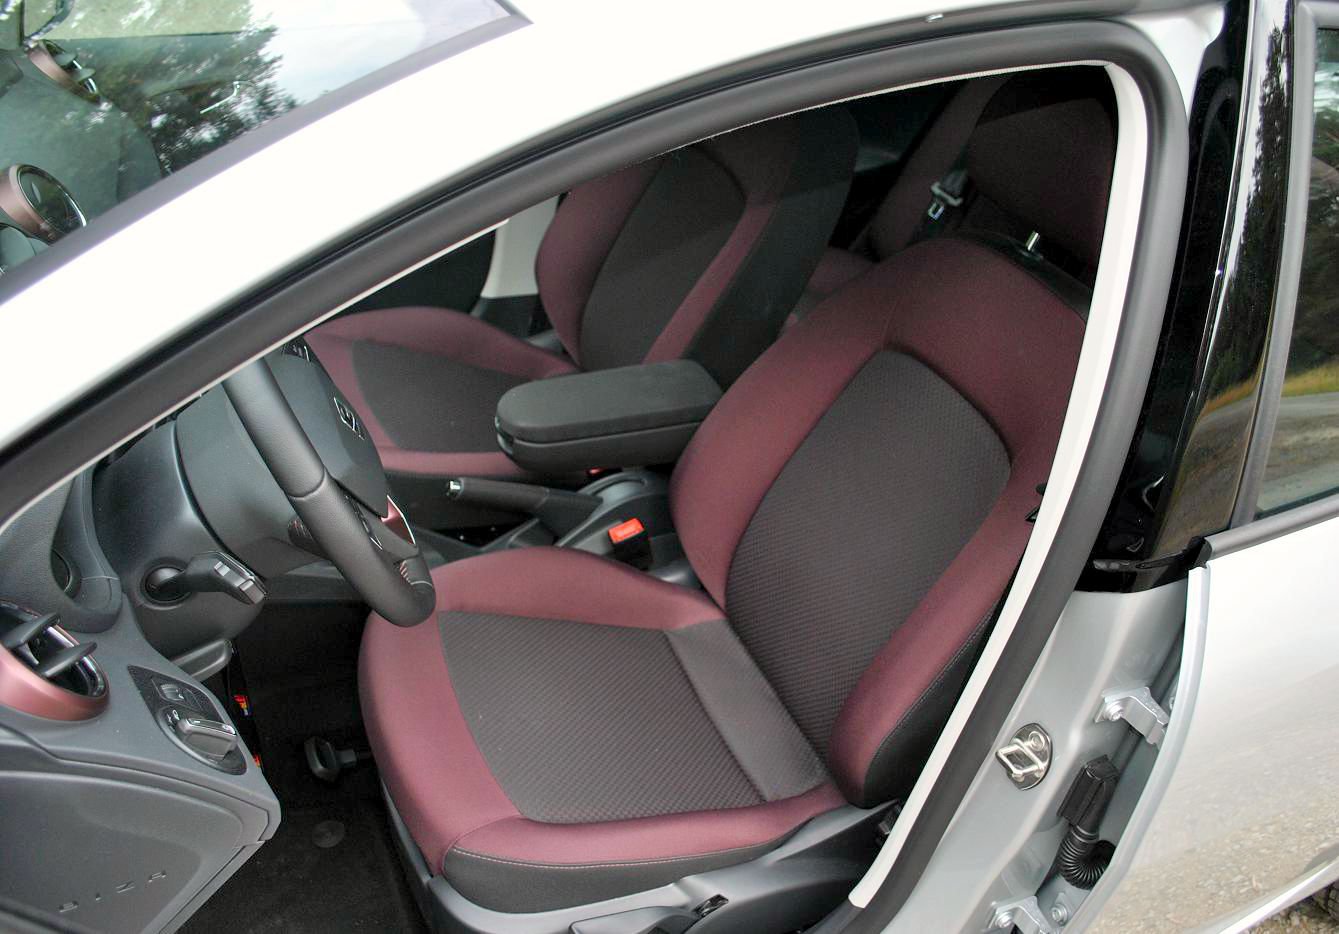 Seat Ibiza 1.2 TSI Style